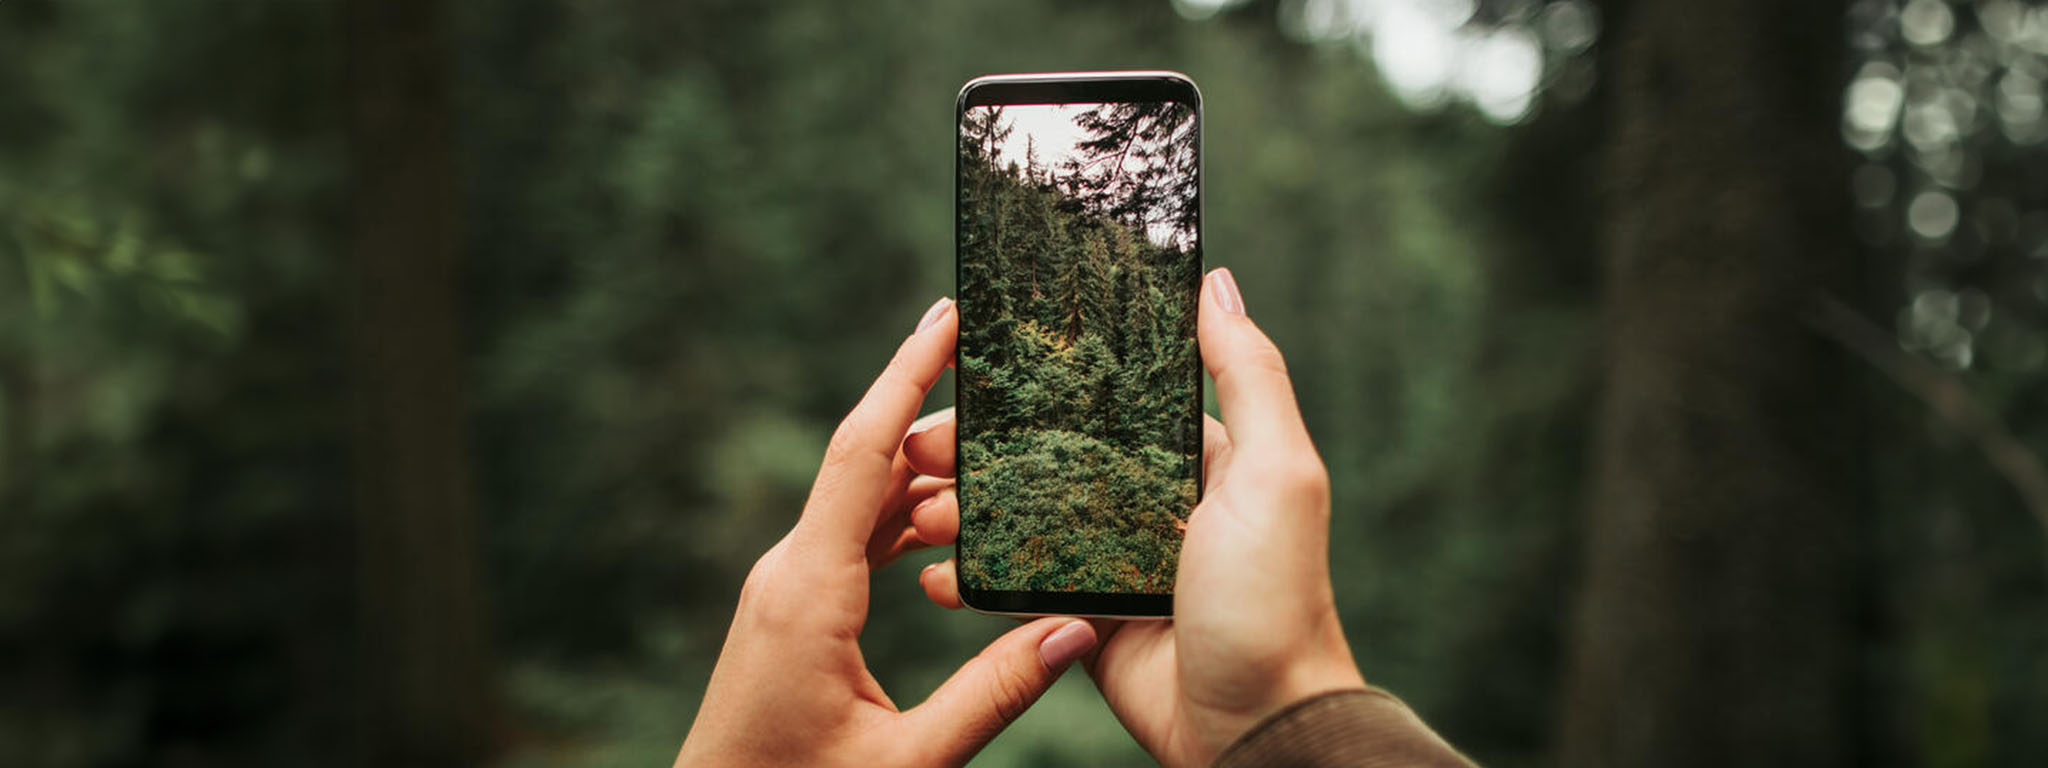 Uma mulher segura um telefone que está tirando uma foto de uma bela vista da floresta.